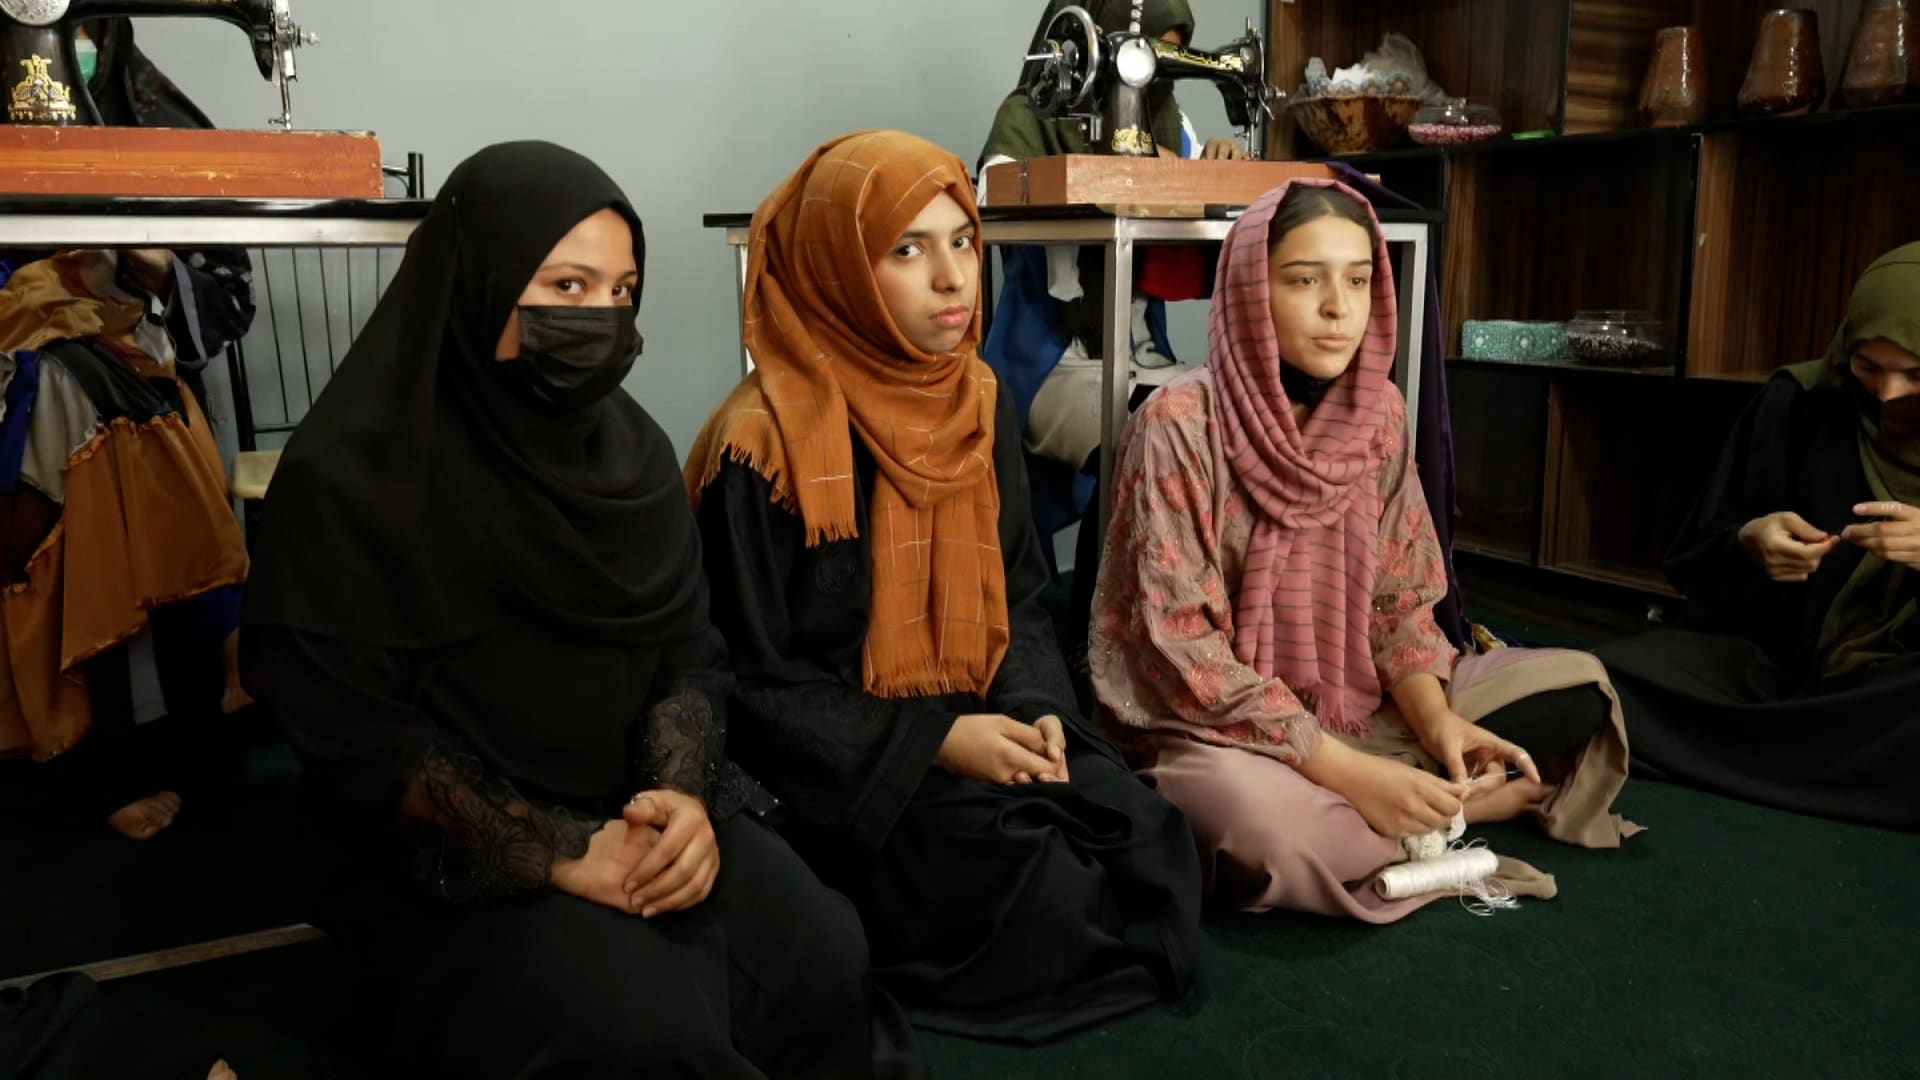 أردن أن يصبحن طبيبات ومهندسات.. أفغانيات يلجأن للخياطة بعد منع طالبان تعليم الفتيات